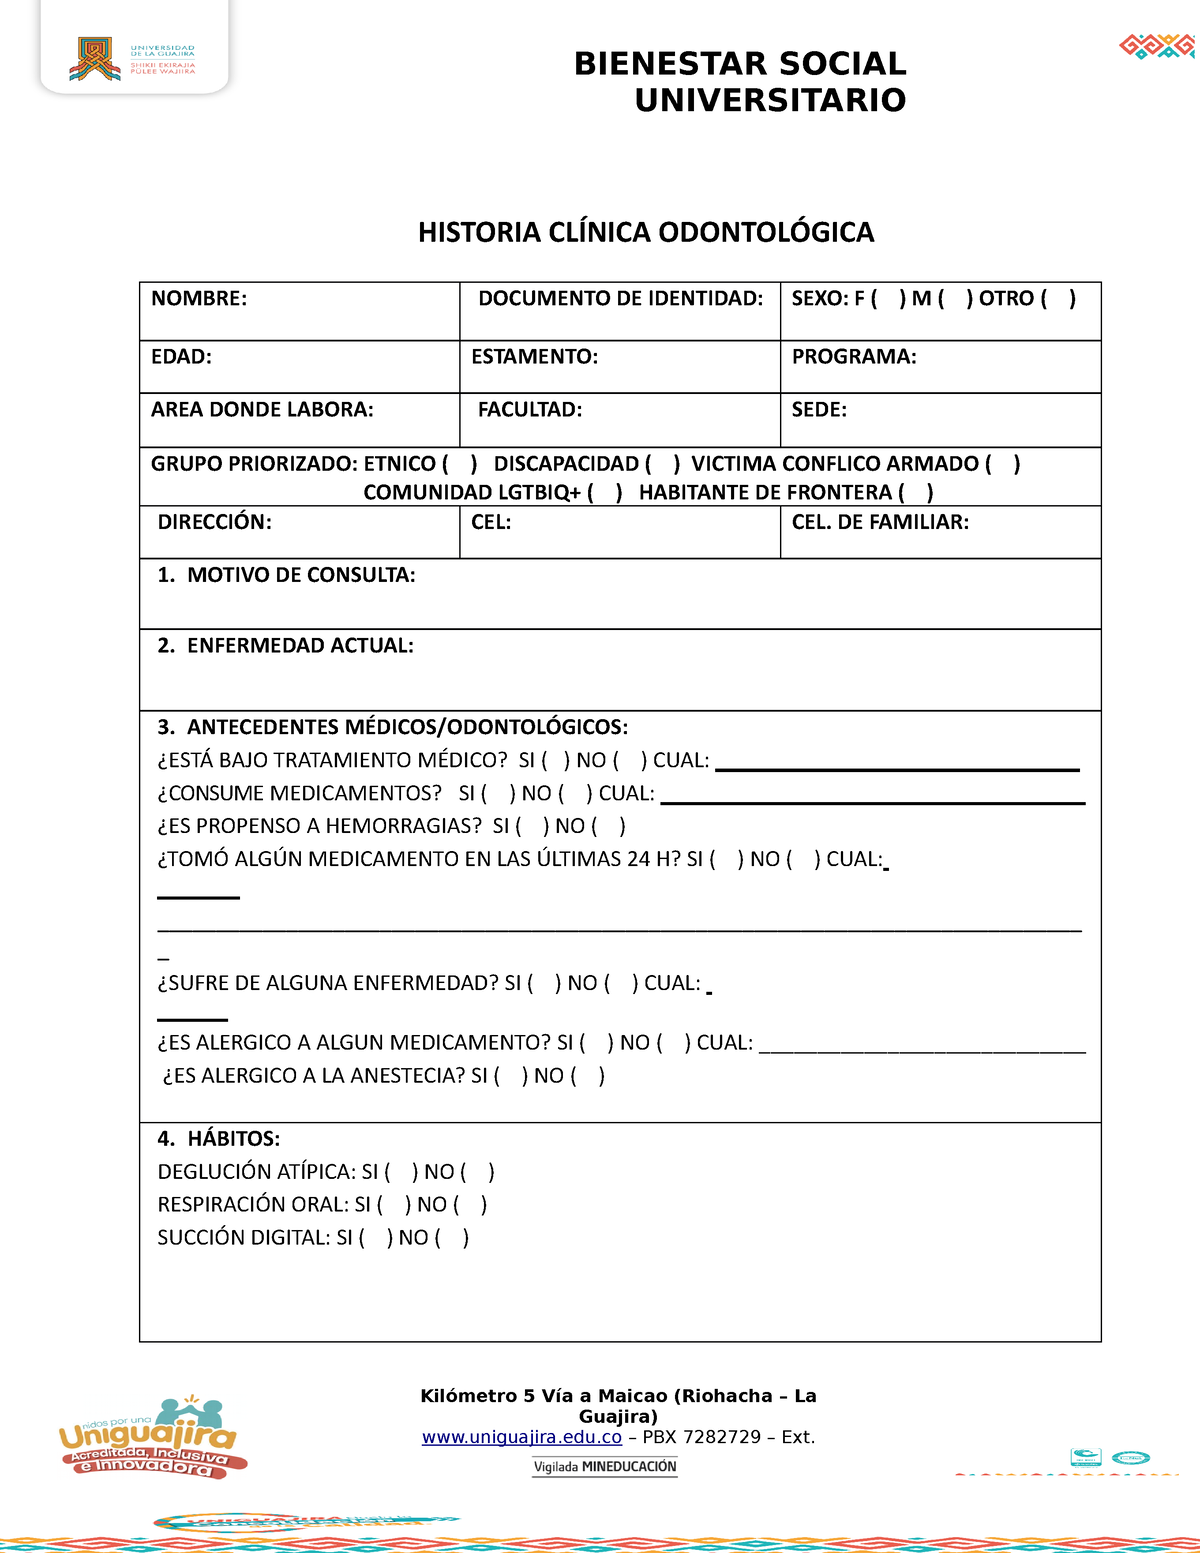 Historia Clinica Odontologica Pdf Consentimiento Info 0216